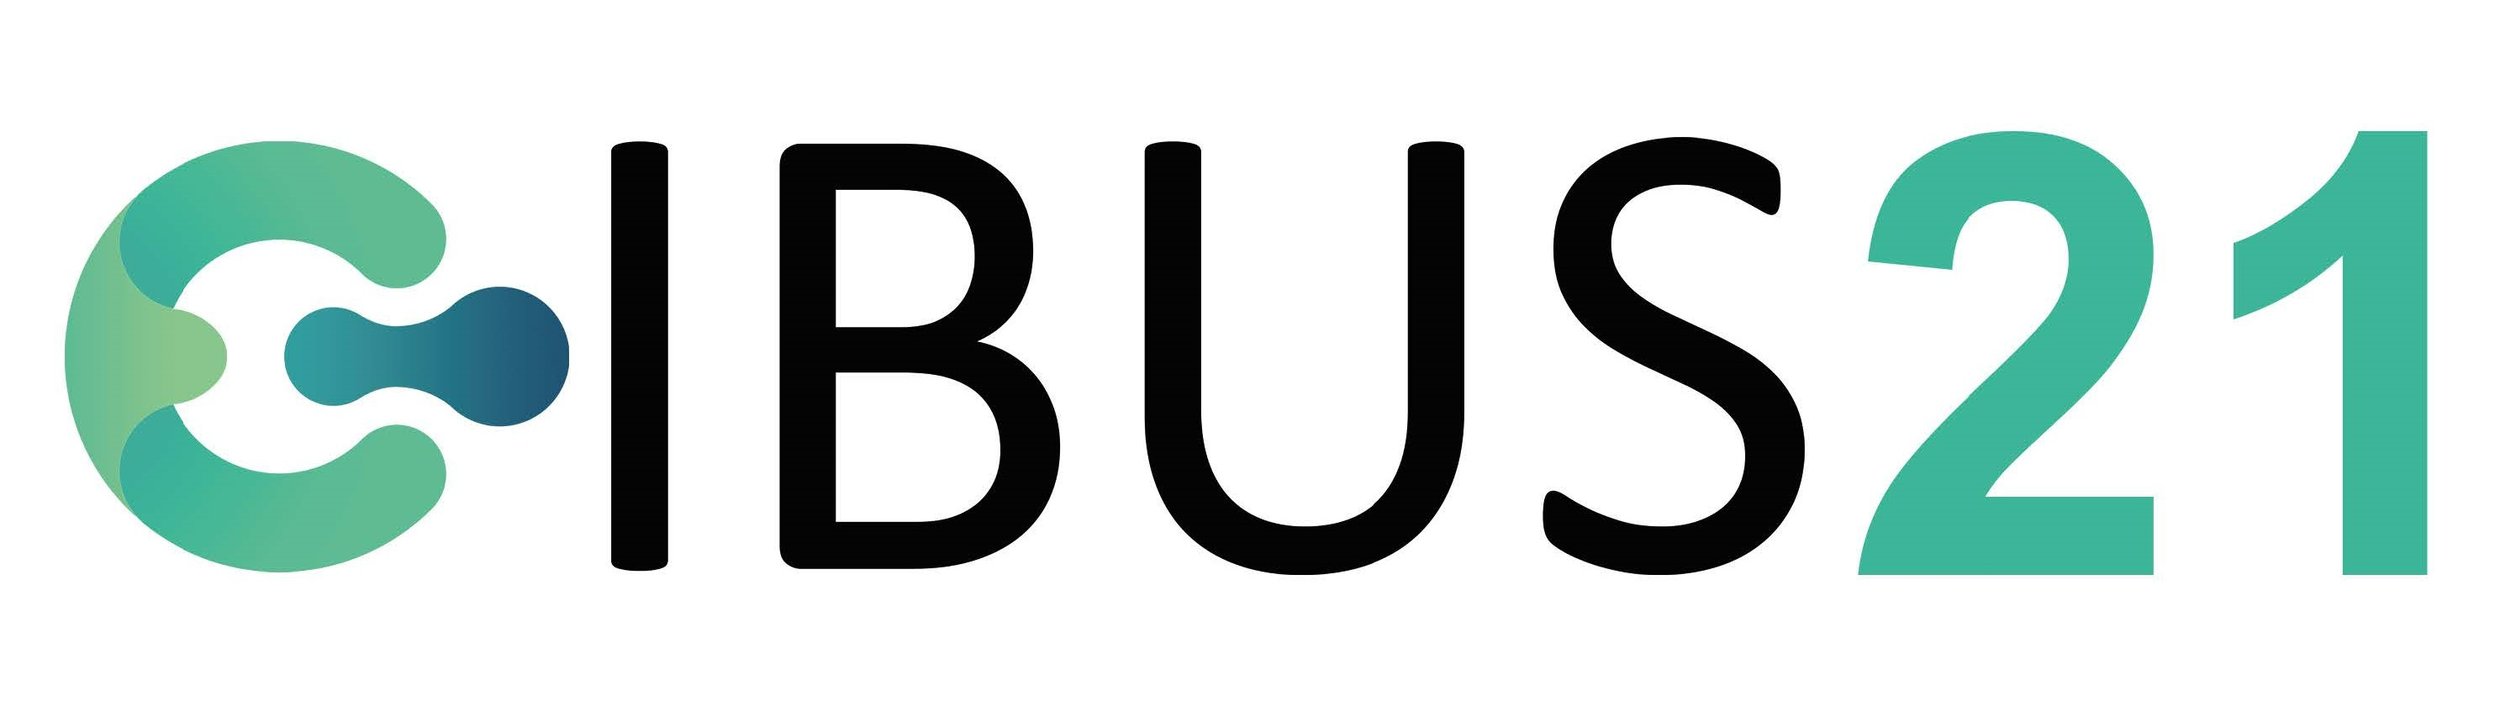 CiBUS logo 1.1.jpg